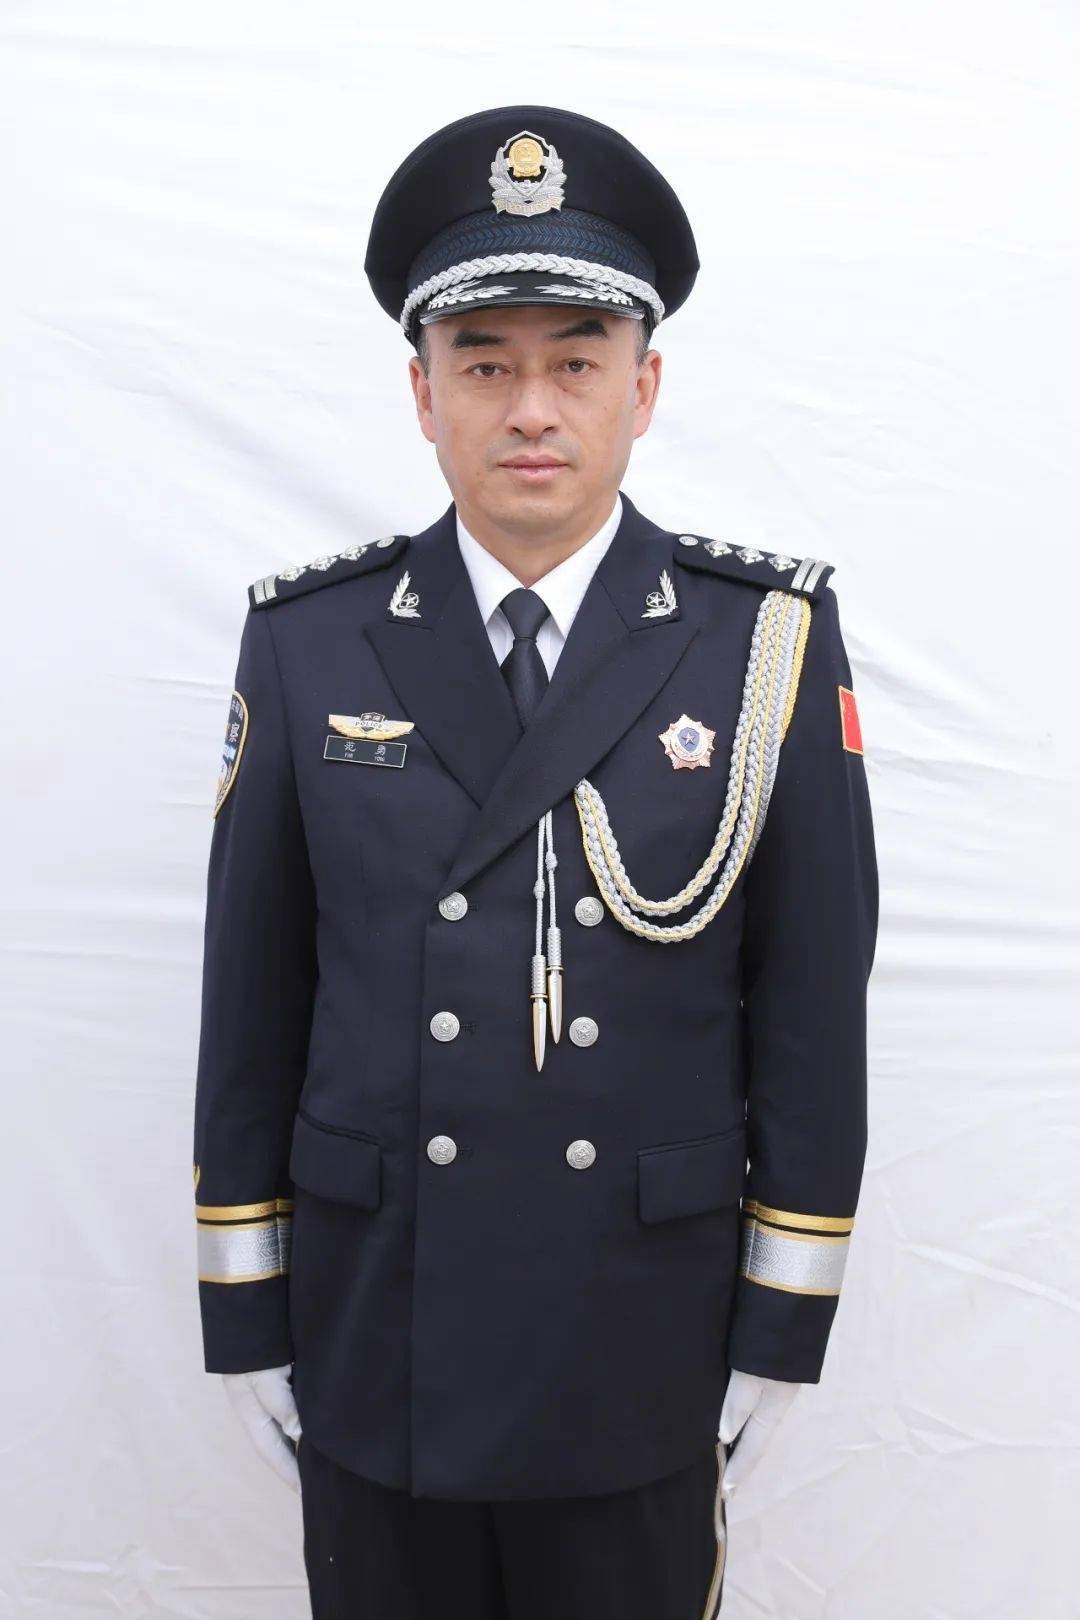 警察制式服装图片